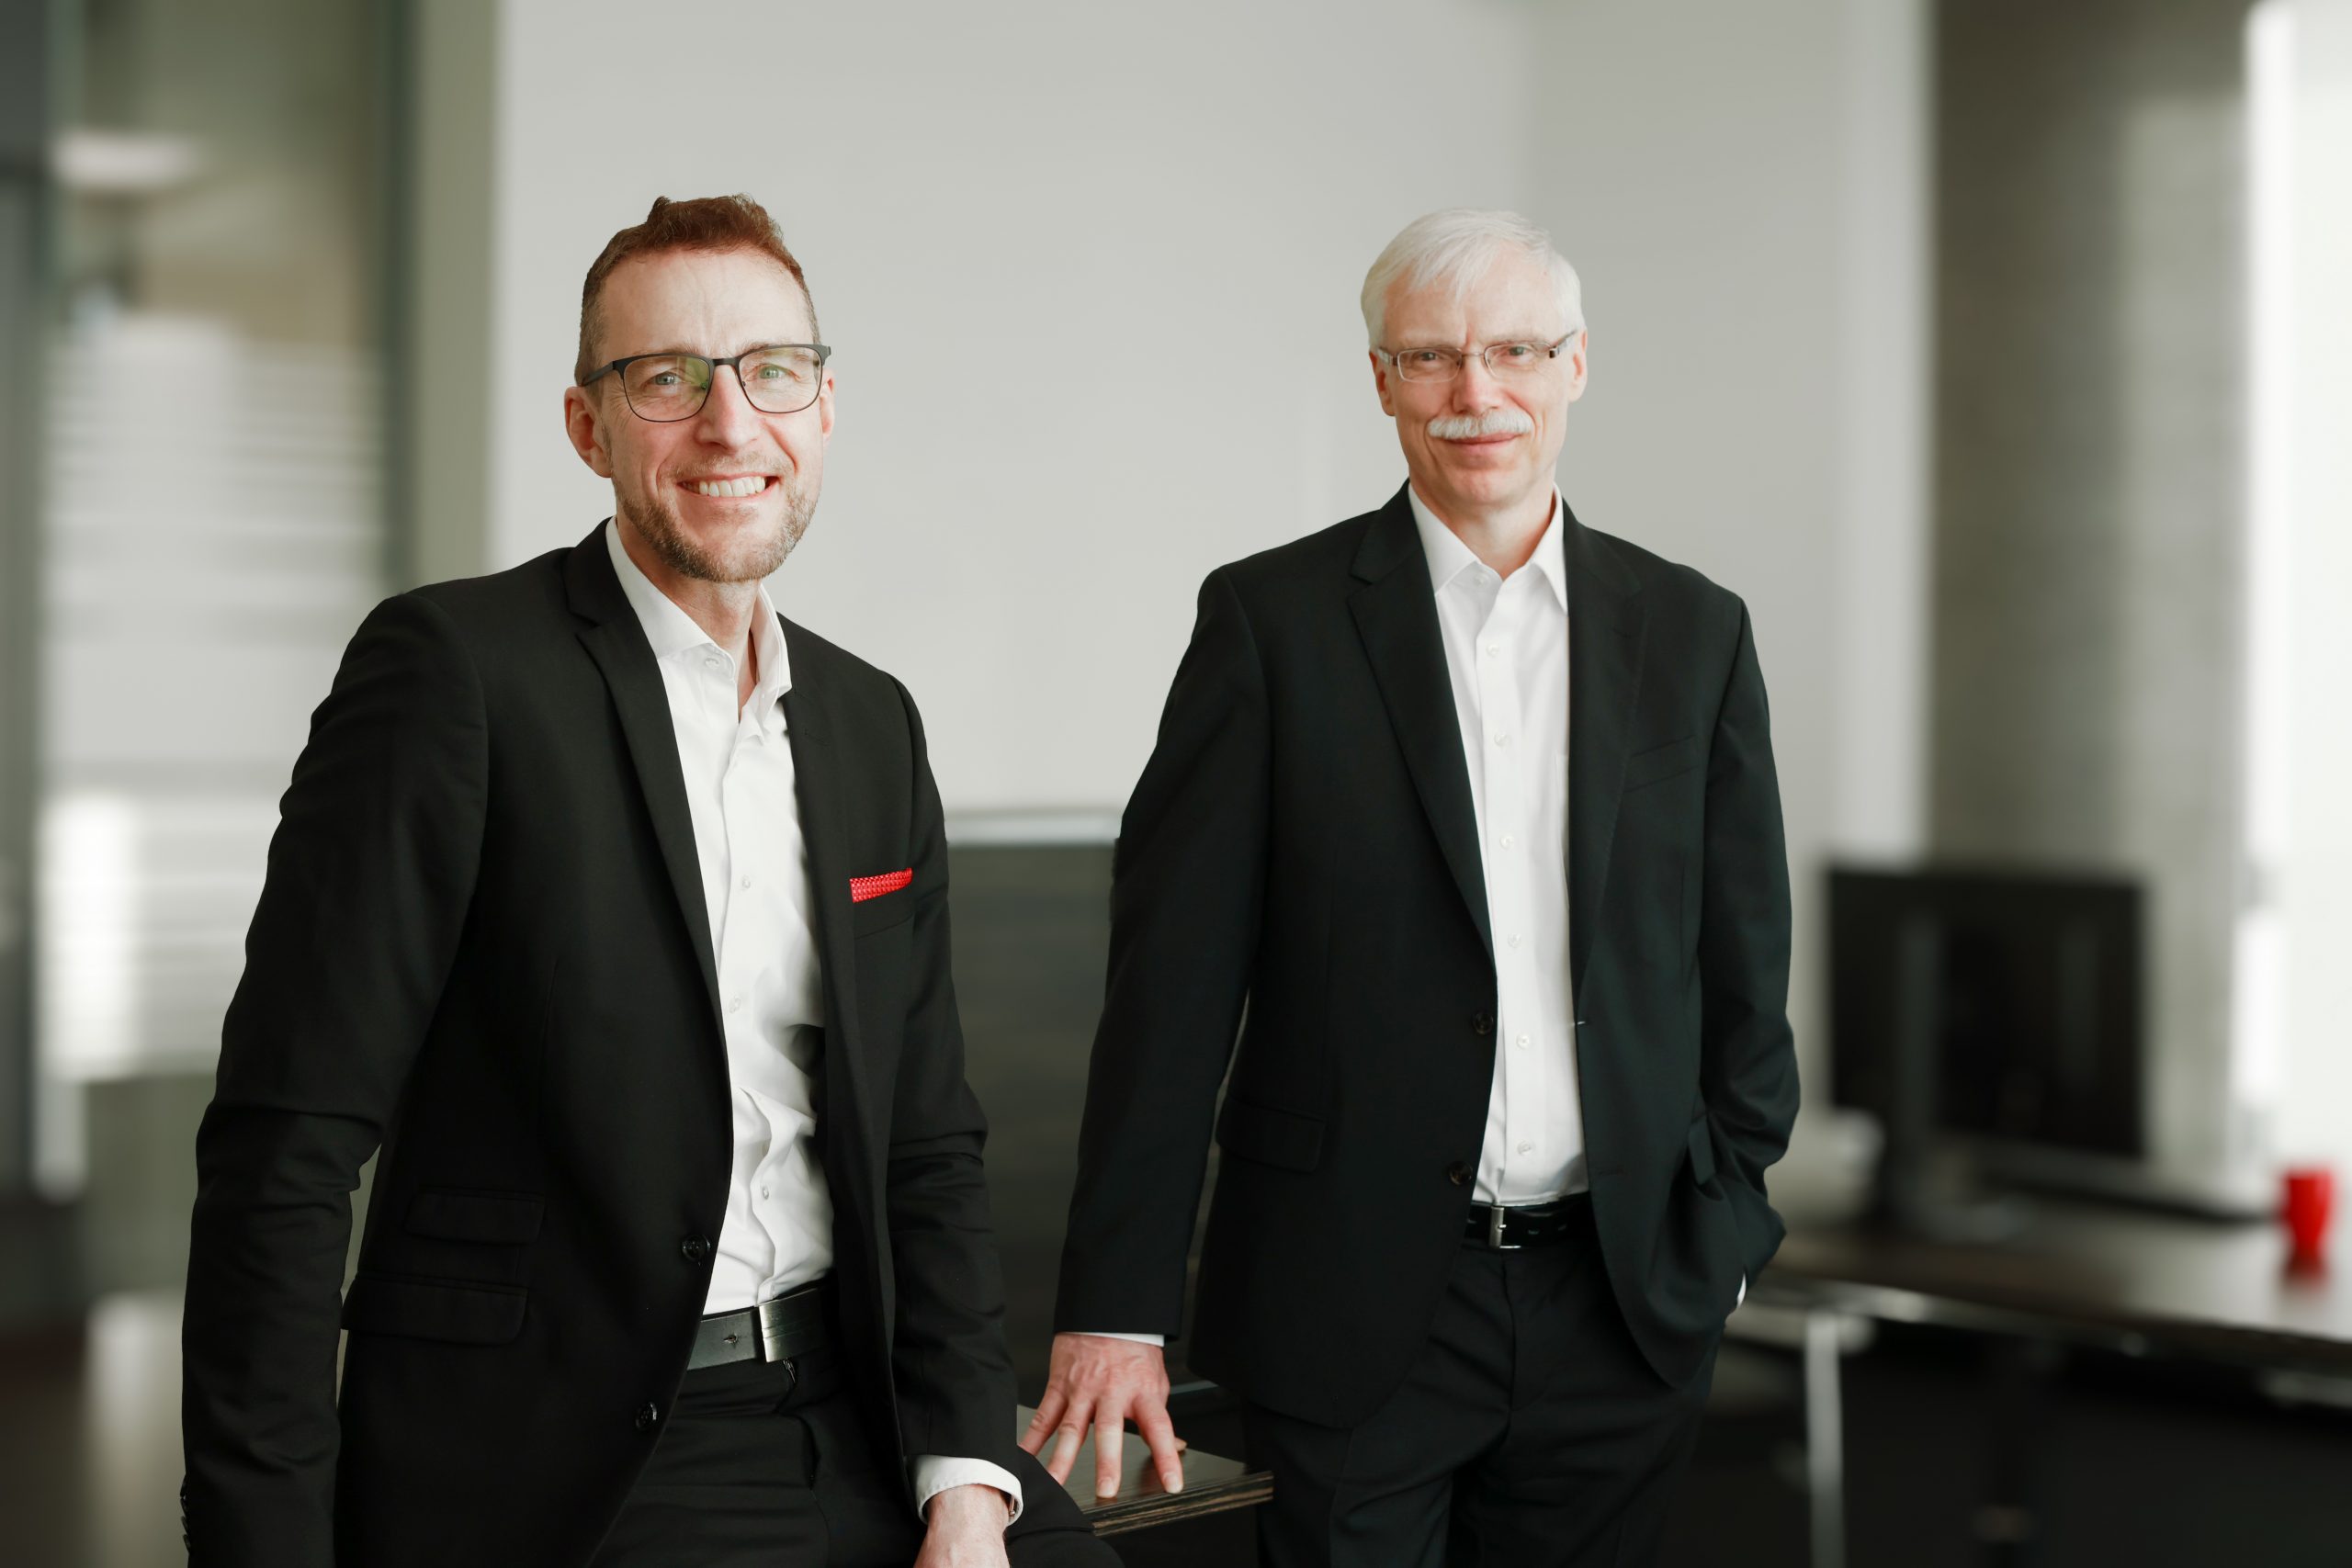 Zu sehen sind von links nach rechts Peter Königkamp (Vorstandsvorsitzender) und Ulrich Kleinetigges (Mitglied des Vorstandes)